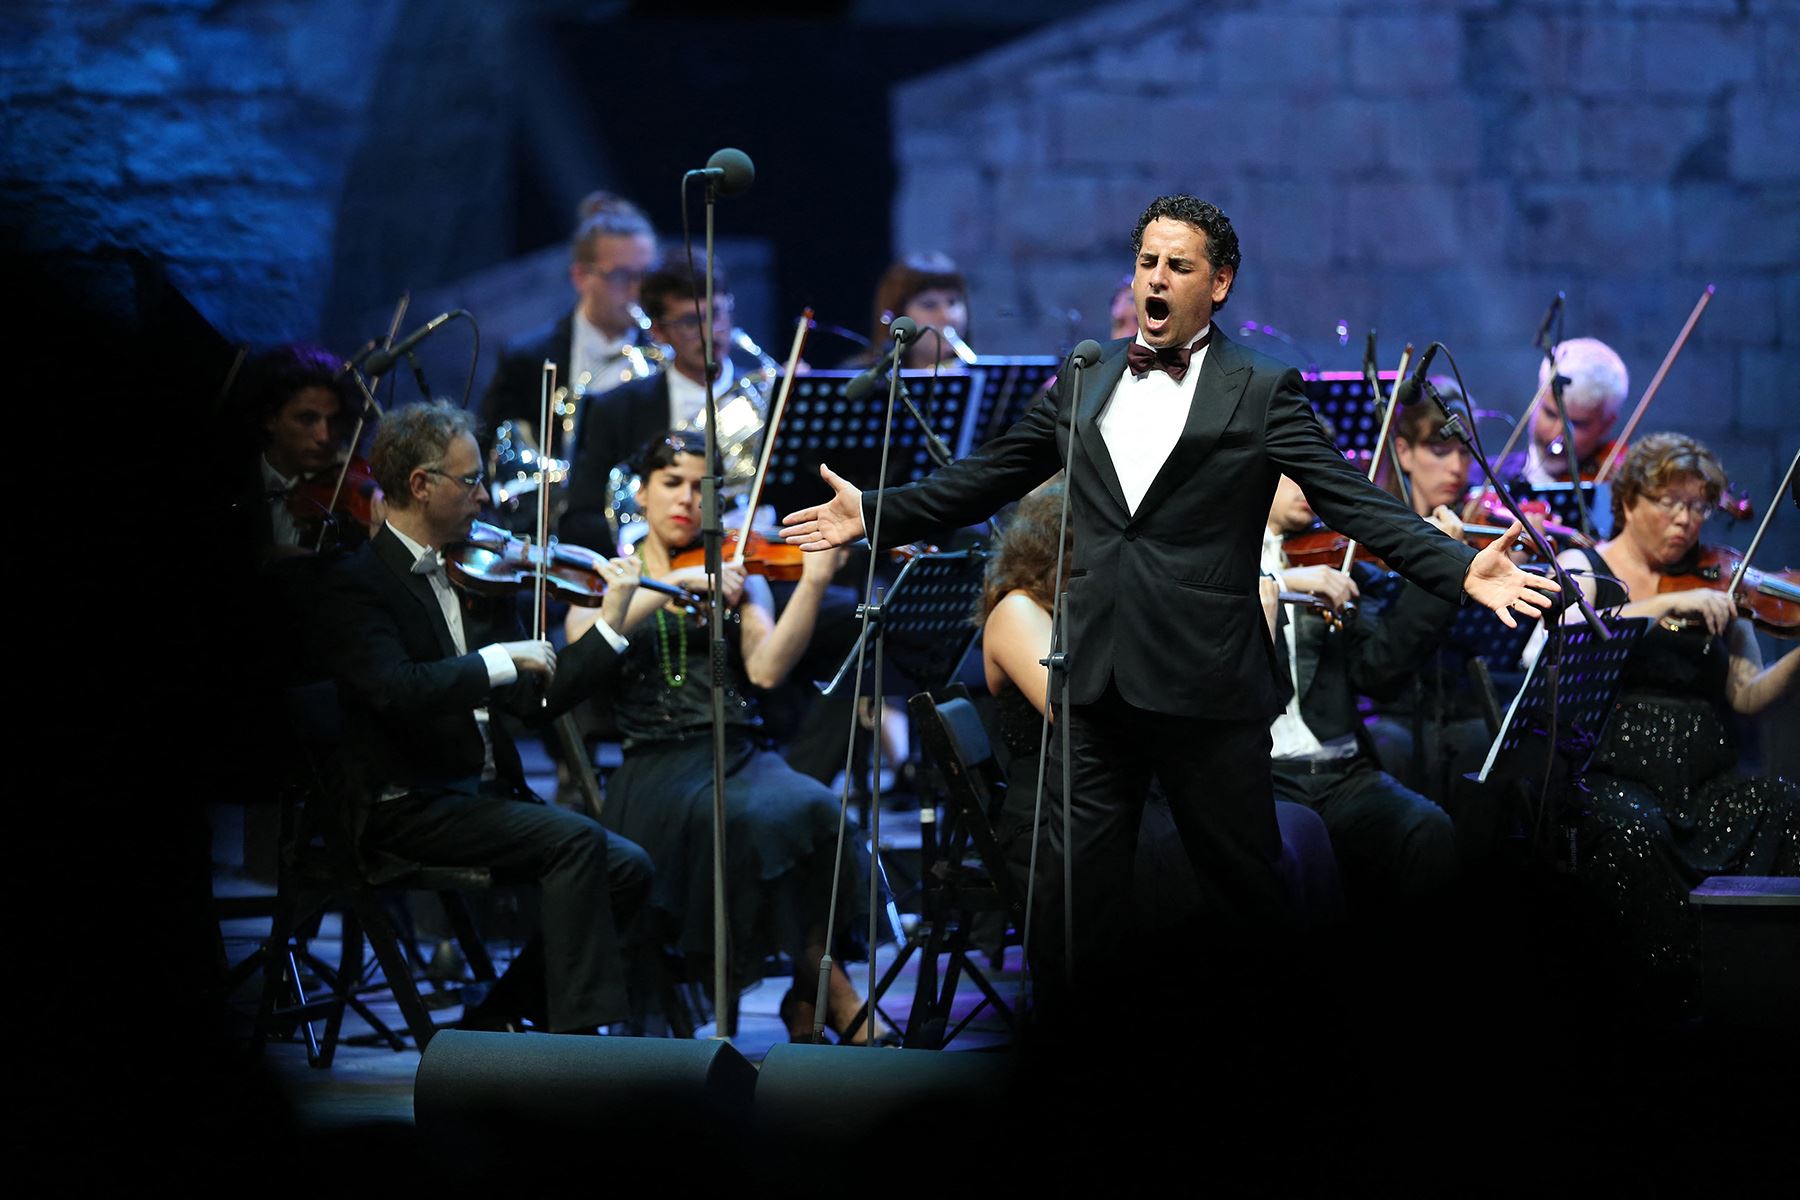 Líbano - 29 de julio de 2015 / El tenor peruano Juan Diego Flórez actúa durante la inauguración del 30º Festival Beiteddine en el Líbano. Foto: AFP